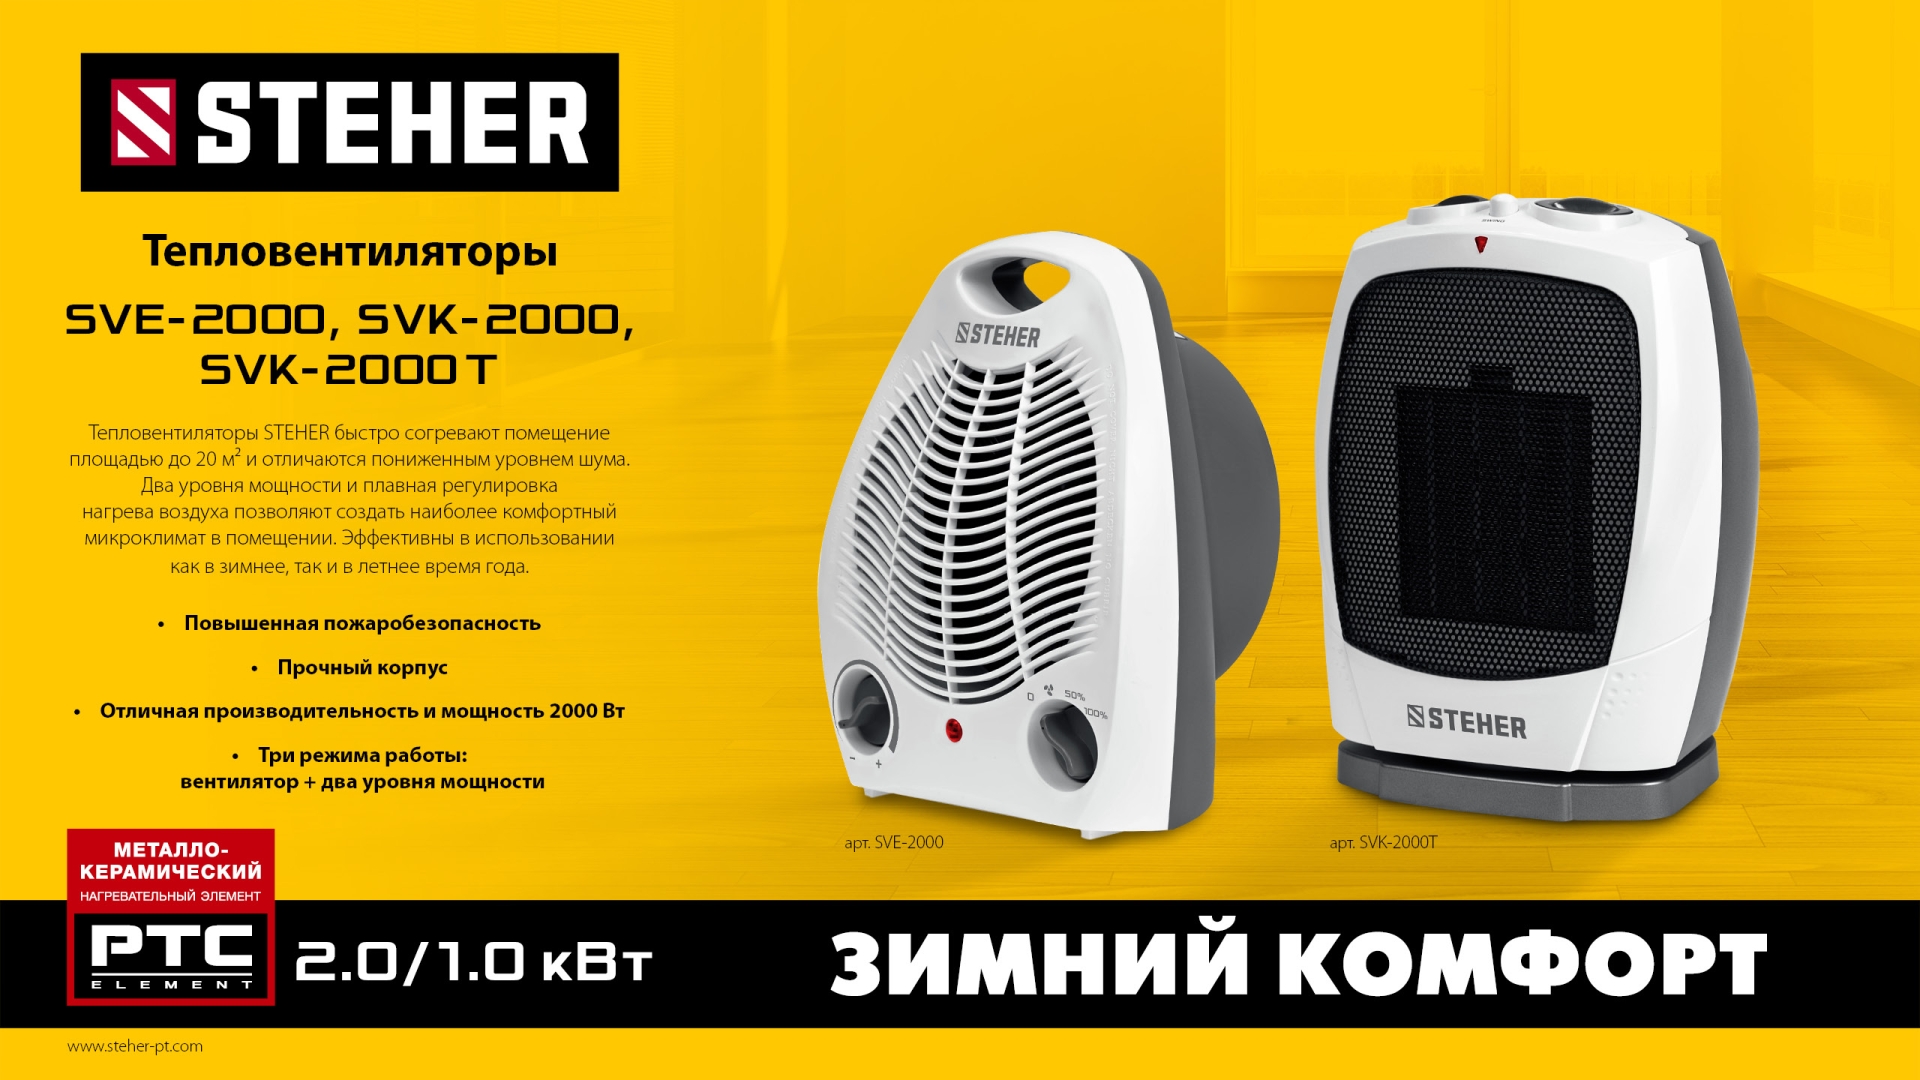 STEHER 2 кВт, тепловентилятор, металло-керамический нагревательный элемент, автоповорот (SVK-2000T)